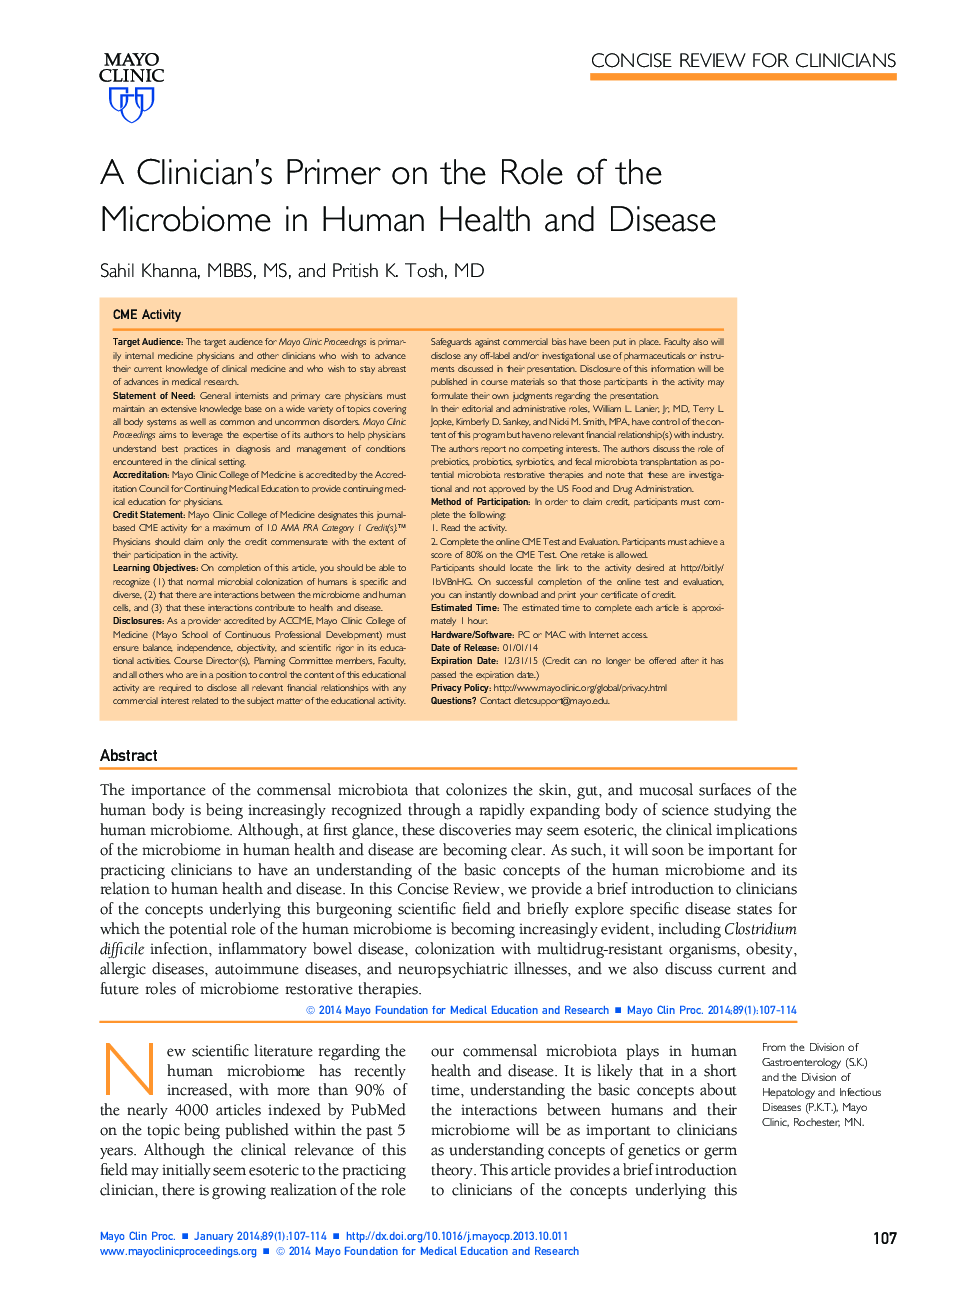 پرایمر پزشکان بر نقش میکروبیوم در سلامت و بیماری انسان 